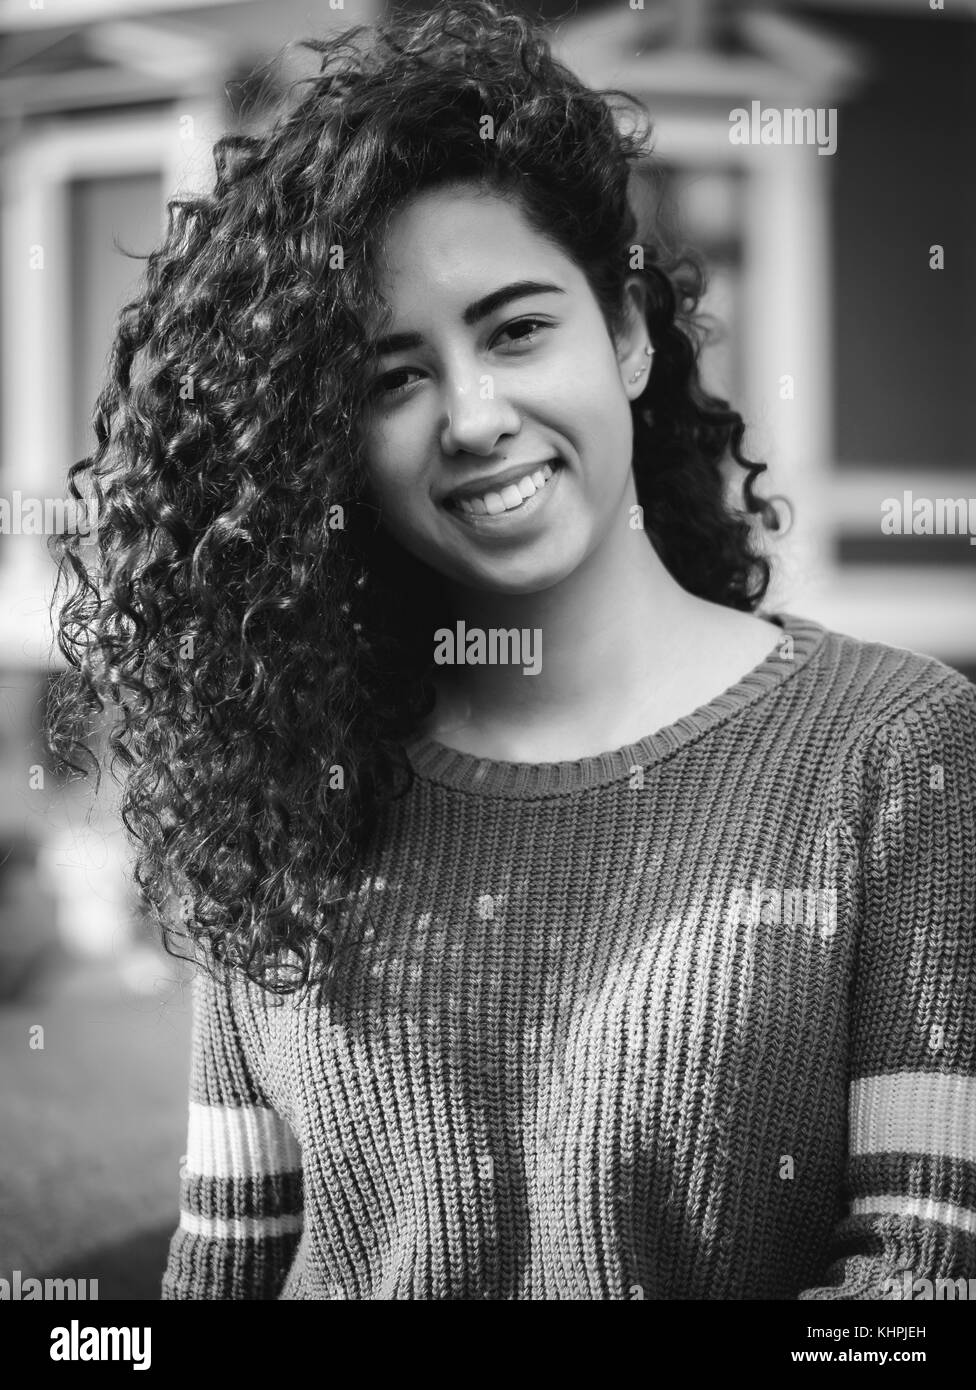 Portrait of happy young hispanic woman avec de beaux cheveux bouclés dans la rue. mixed race girl smiling. saison d'automne. couleur à l'automne, l'architecture rouge Banque D'Images